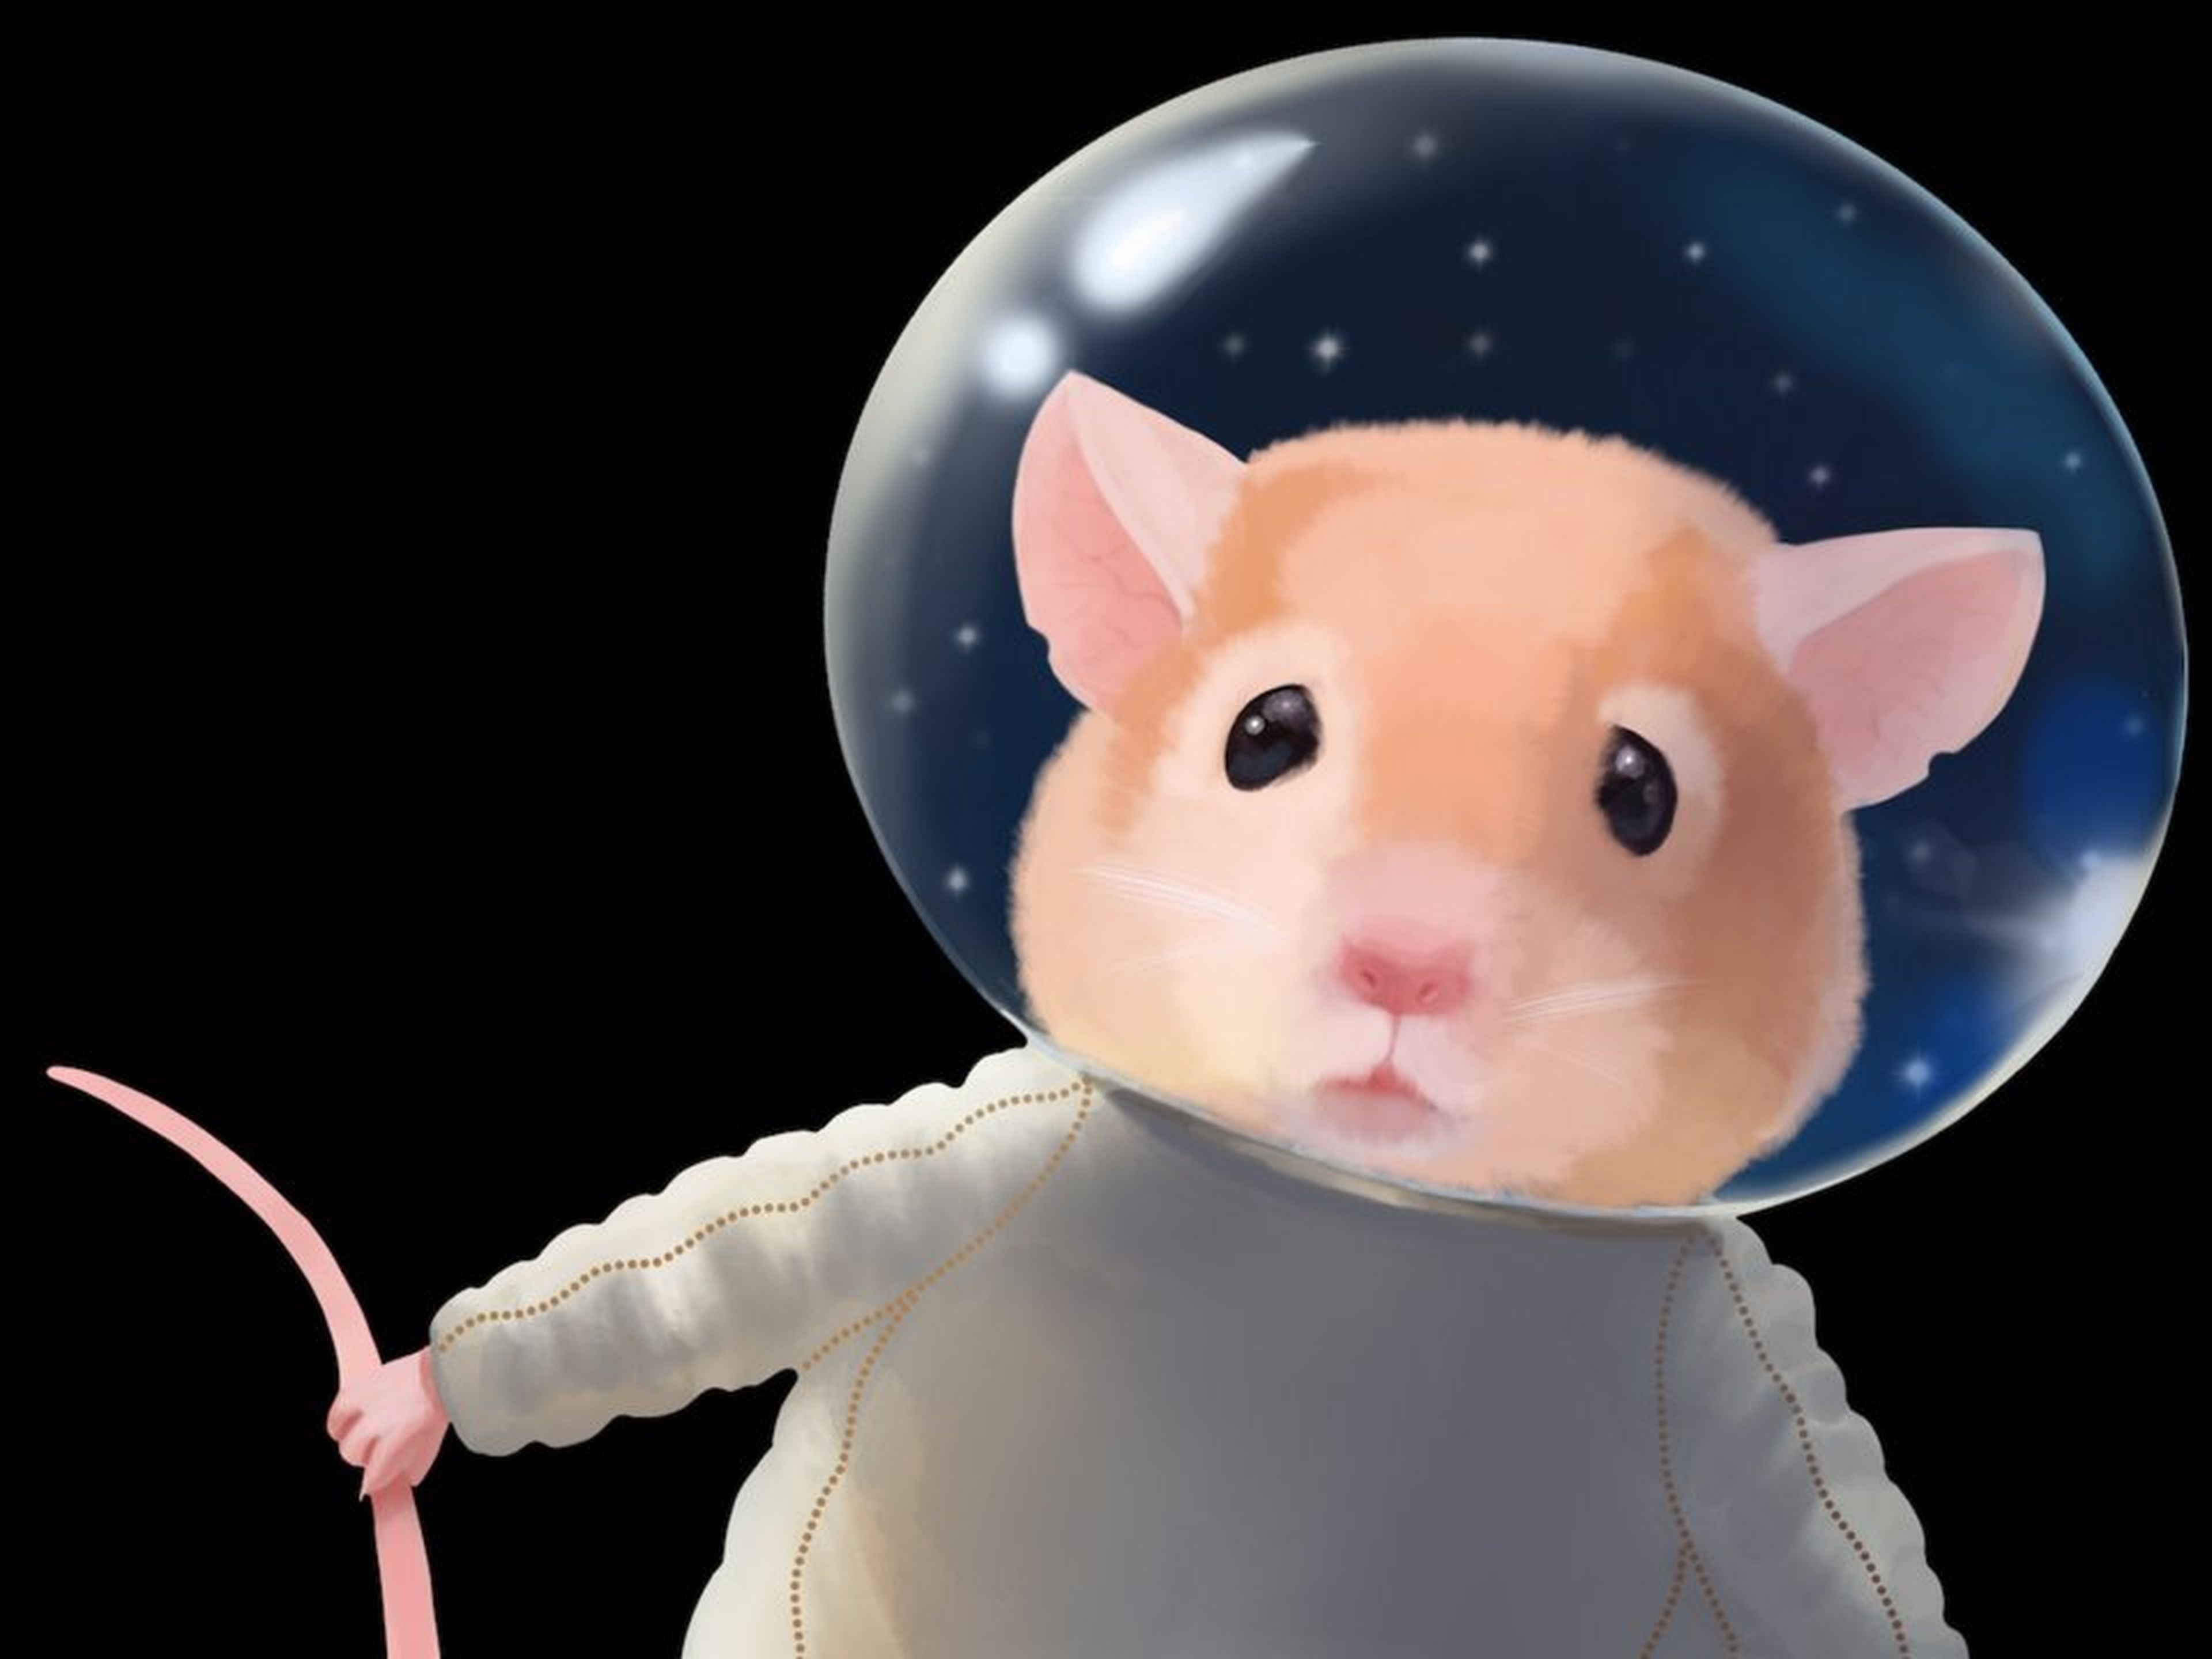 [re]Un ratón en el espacio